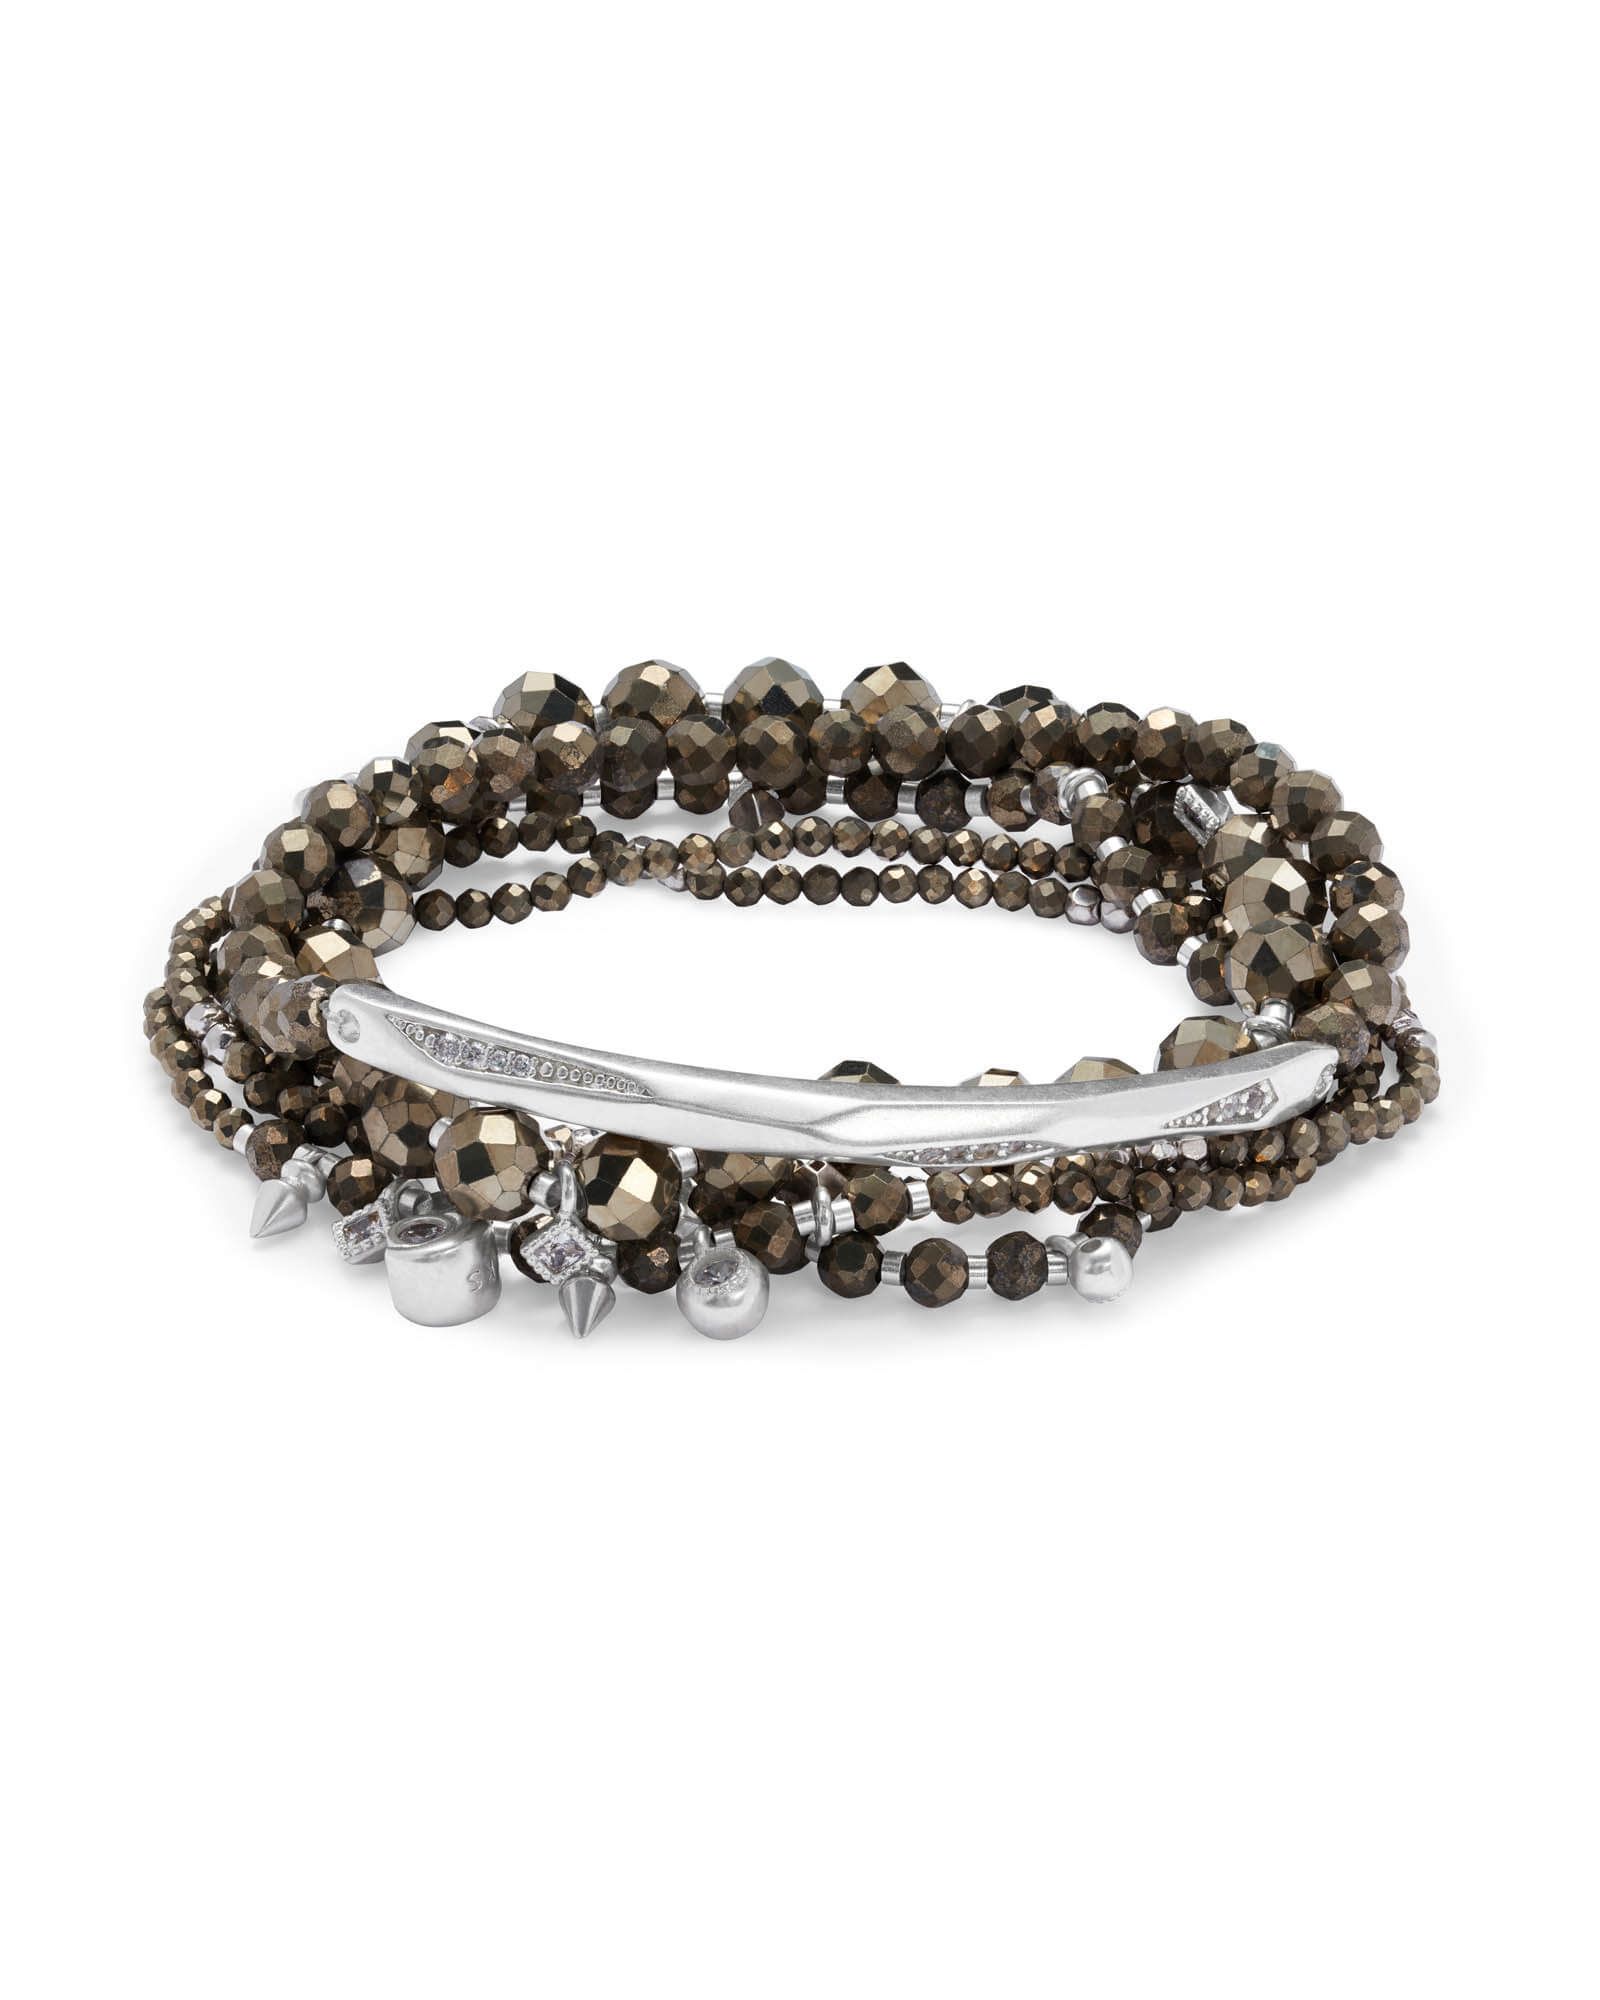 Supak Silver Beaded Bracelet Set in Brown Pyrite | Kendra Scott | Kendra Scott